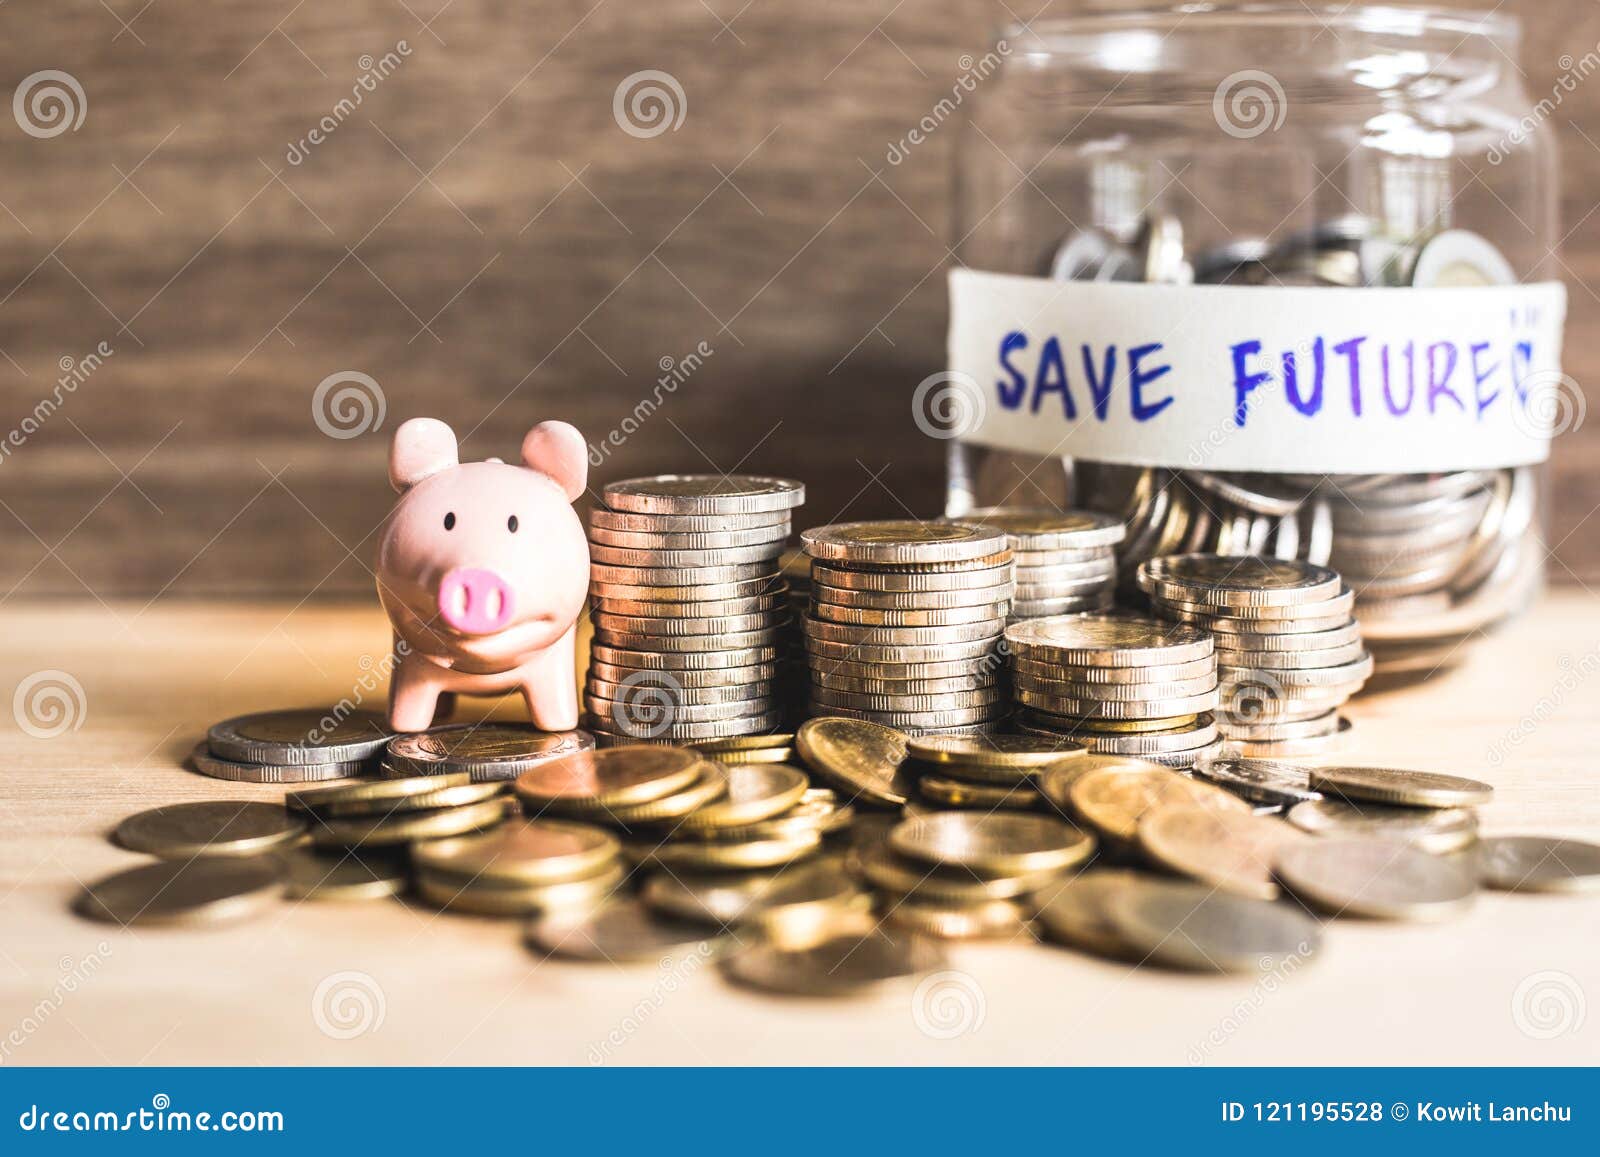 Idee Dei Soldi Di Risparmio Per Il Futuro Con Le Monete Ed Il Porcellino  Salvadanaio Fotografia Stock - Immagine di contanti, economia: 121195528